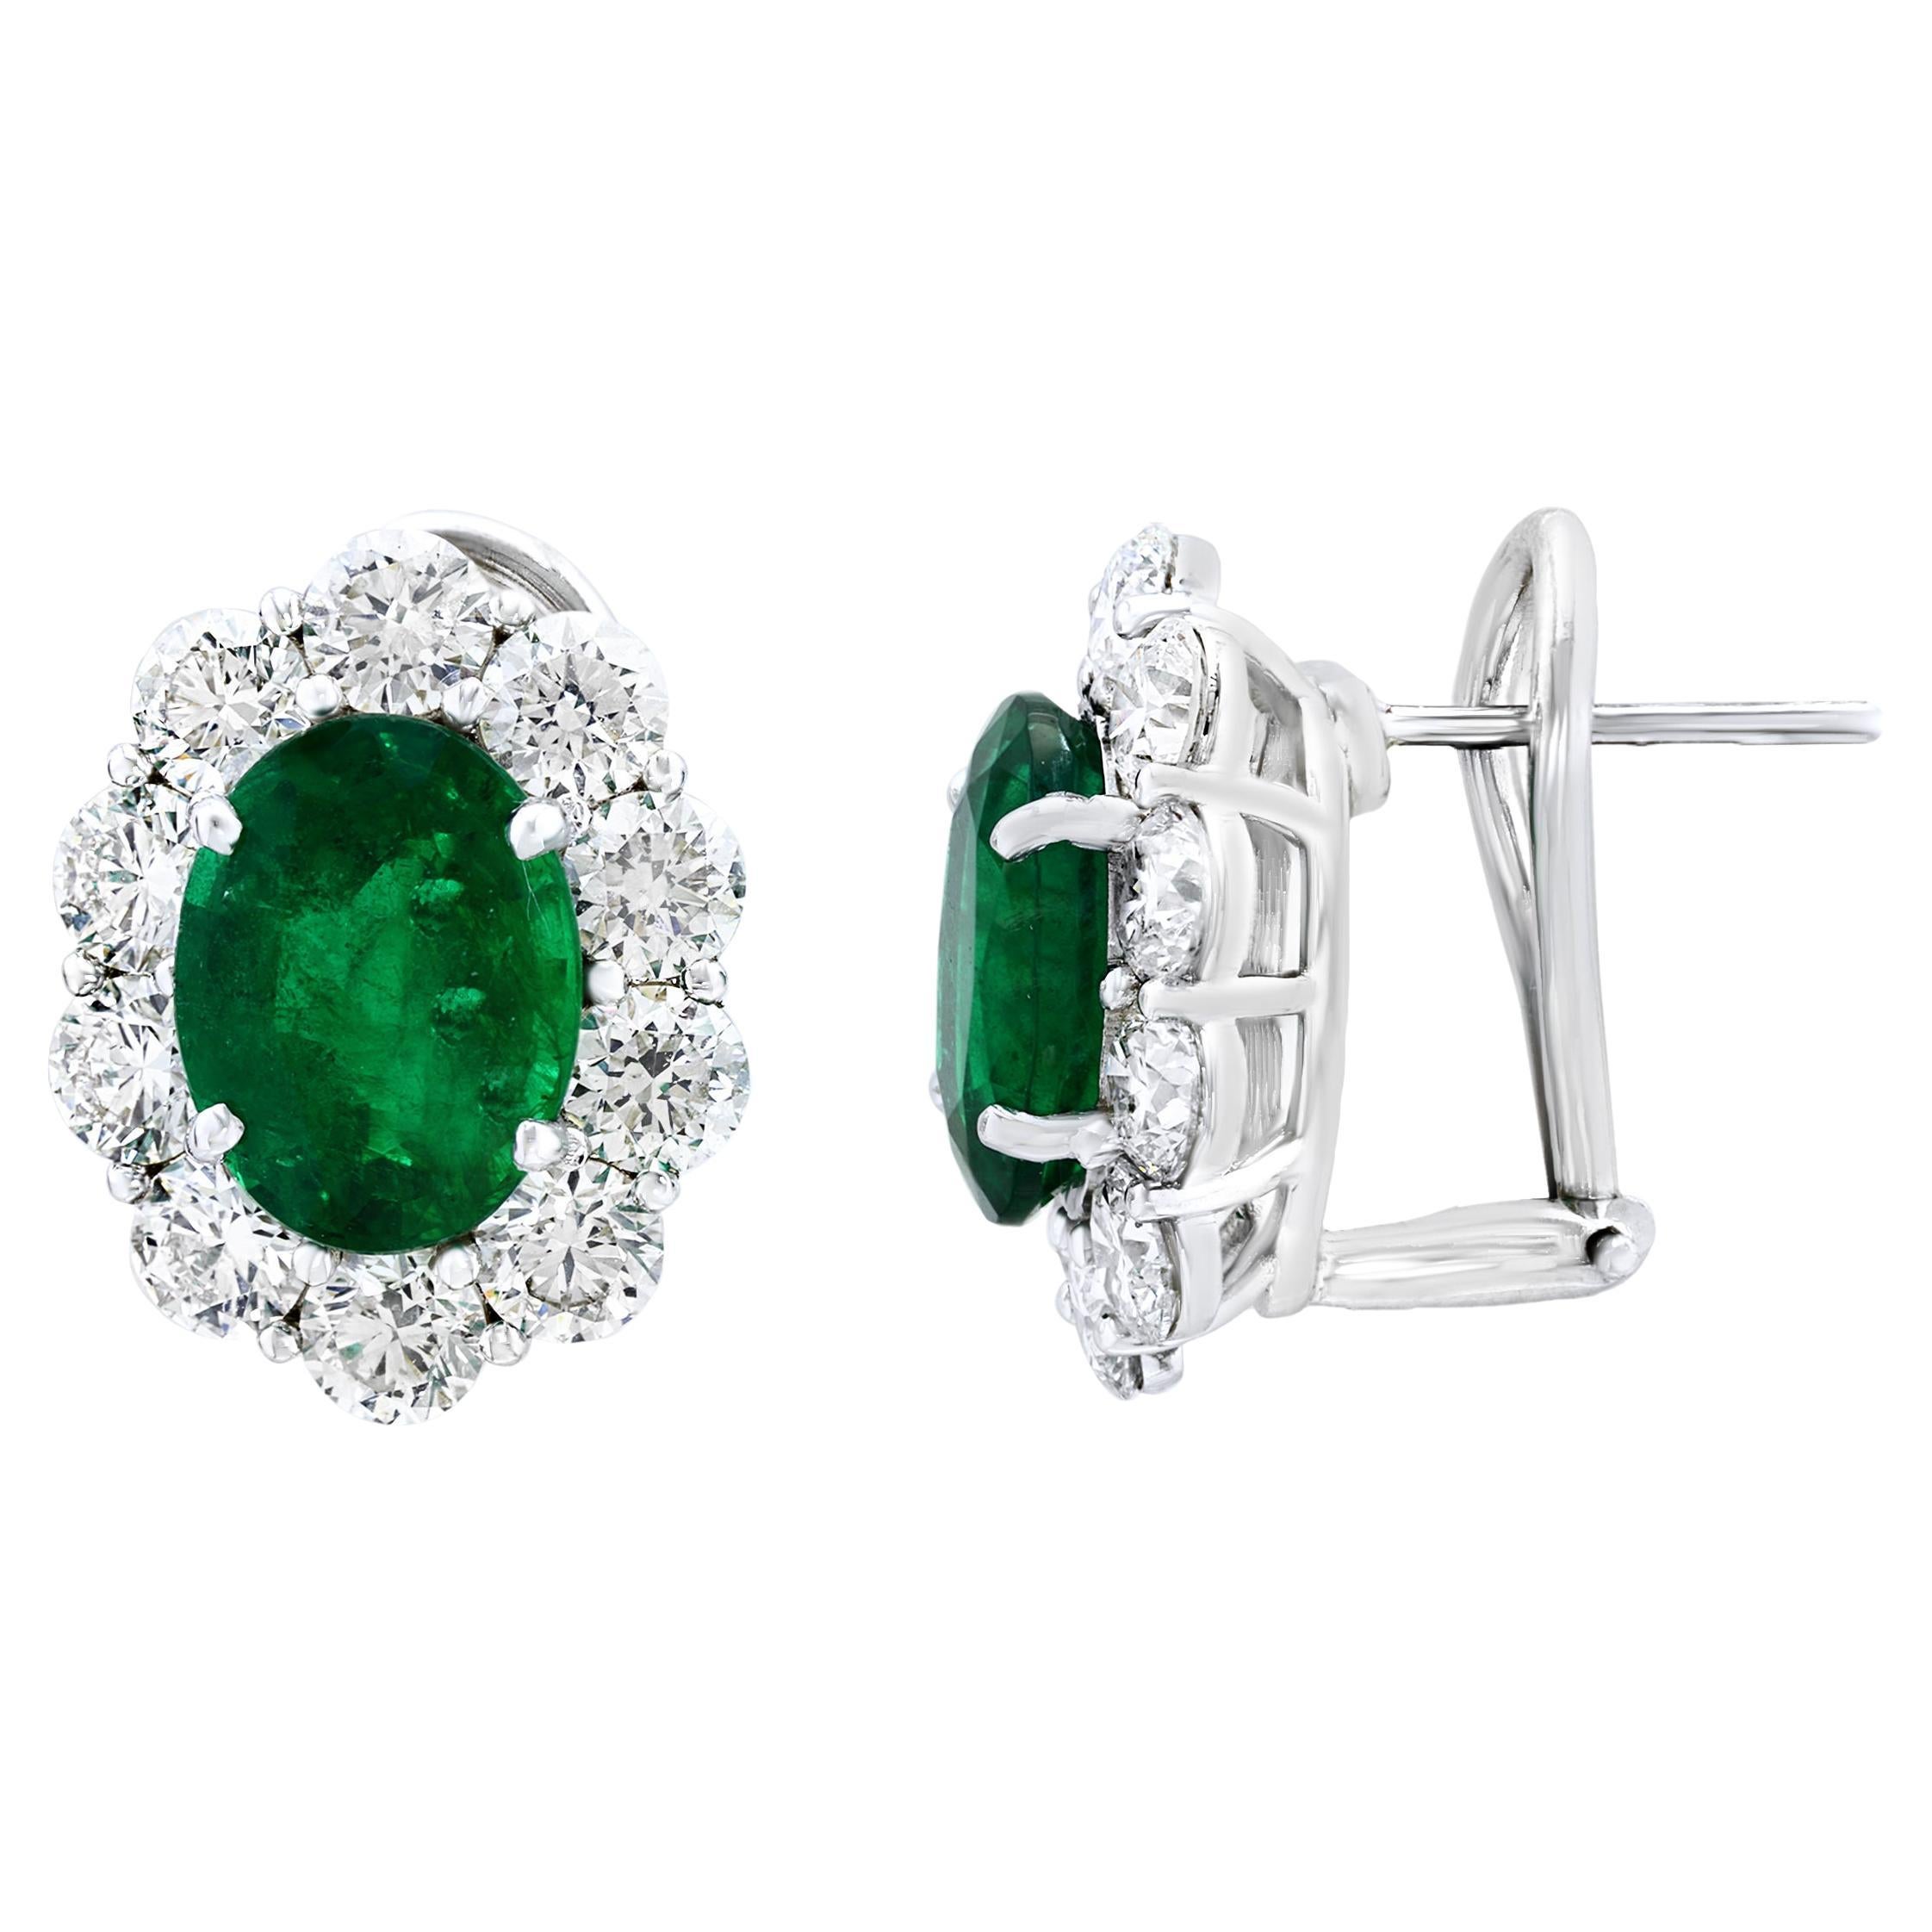 Ohrringe mit 5,13 Karat Smaragd im Ovalschliff und Diamant-Halo aus 18 Karat Weißgold